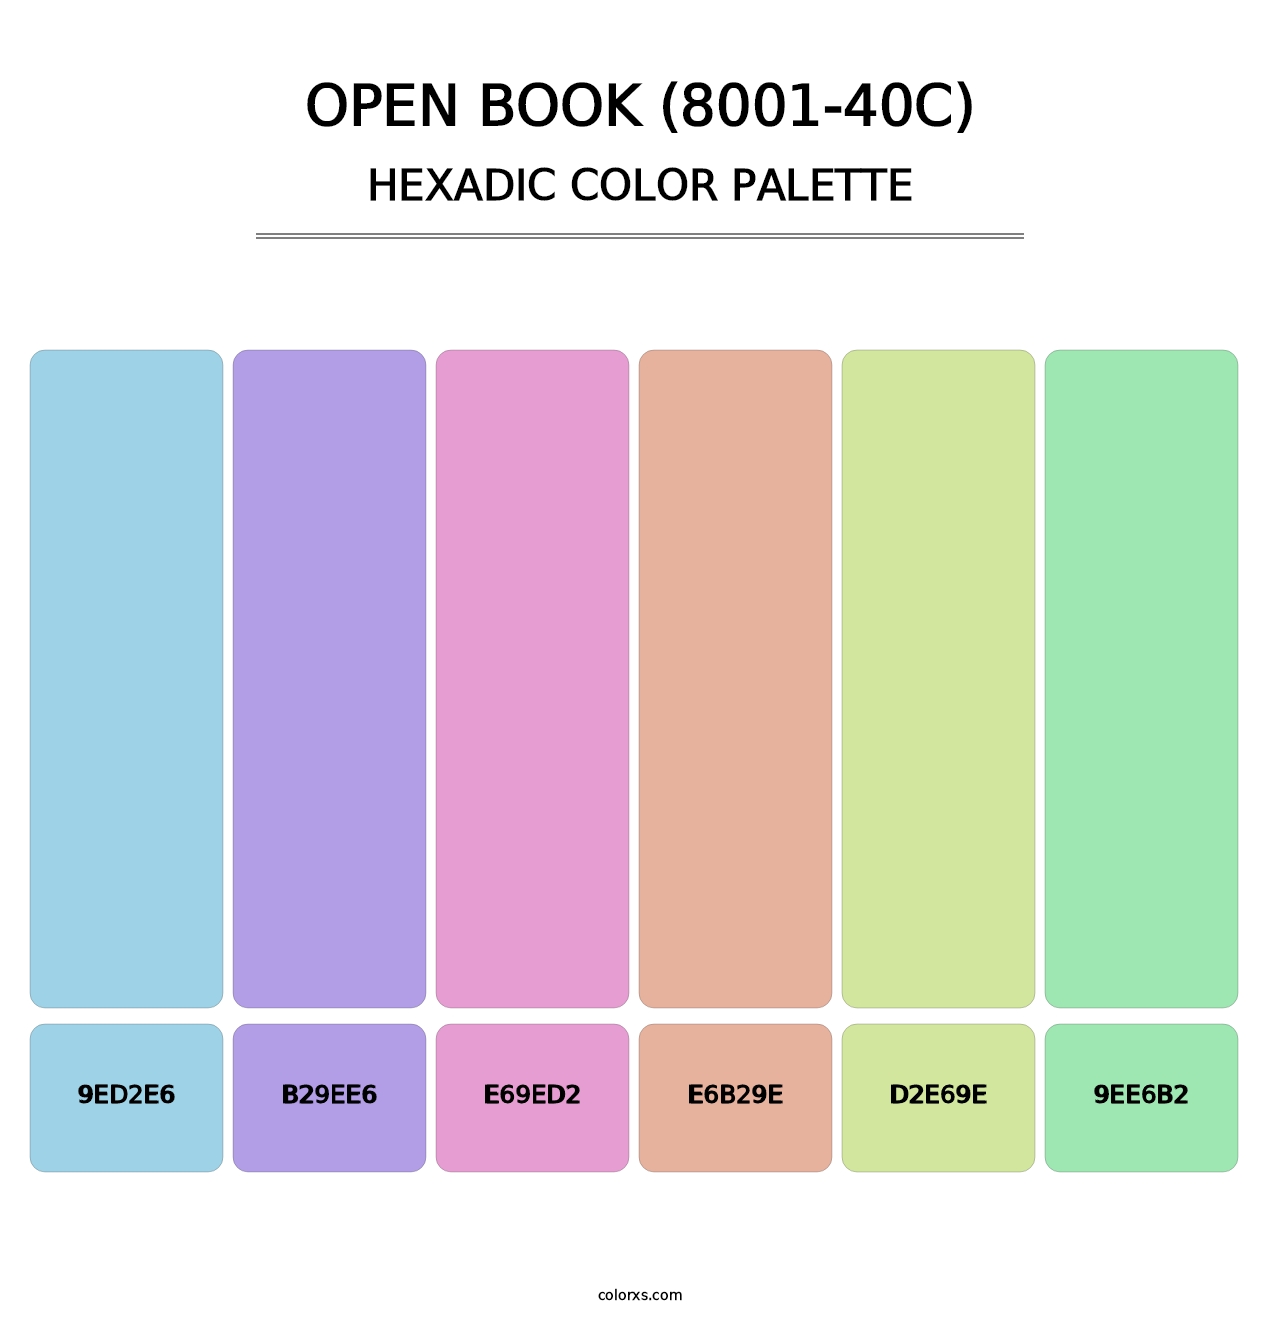 Open Book (8001-40C) - Hexadic Color Palette